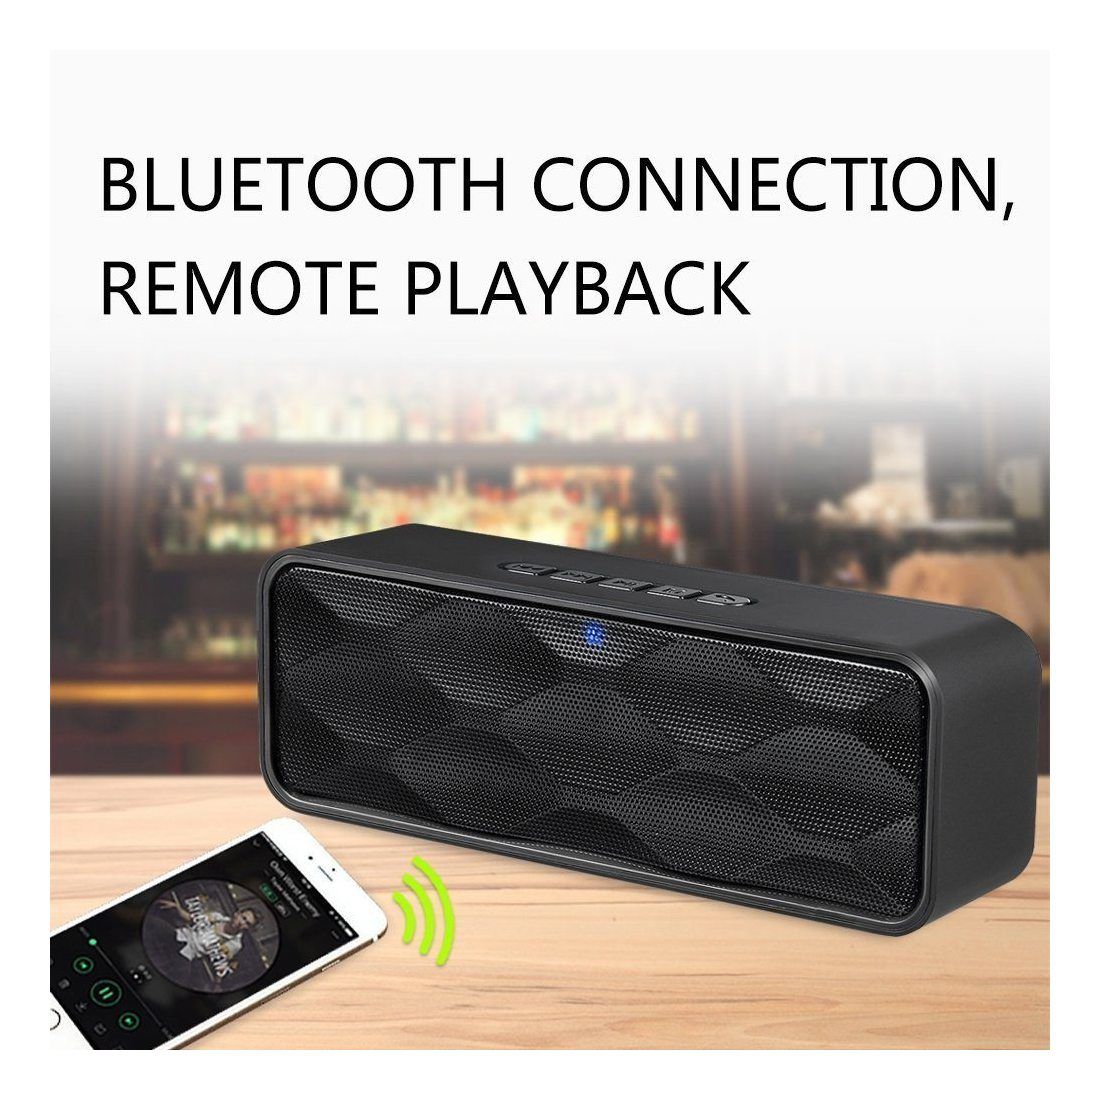 Enceinte Bluetooth Portable, ZoeeTree S1 Haut-Parleur Sans Fil, Bluetooth 4.2, Subwoofer, Son HD Stéréo, Mains Libres Télépho